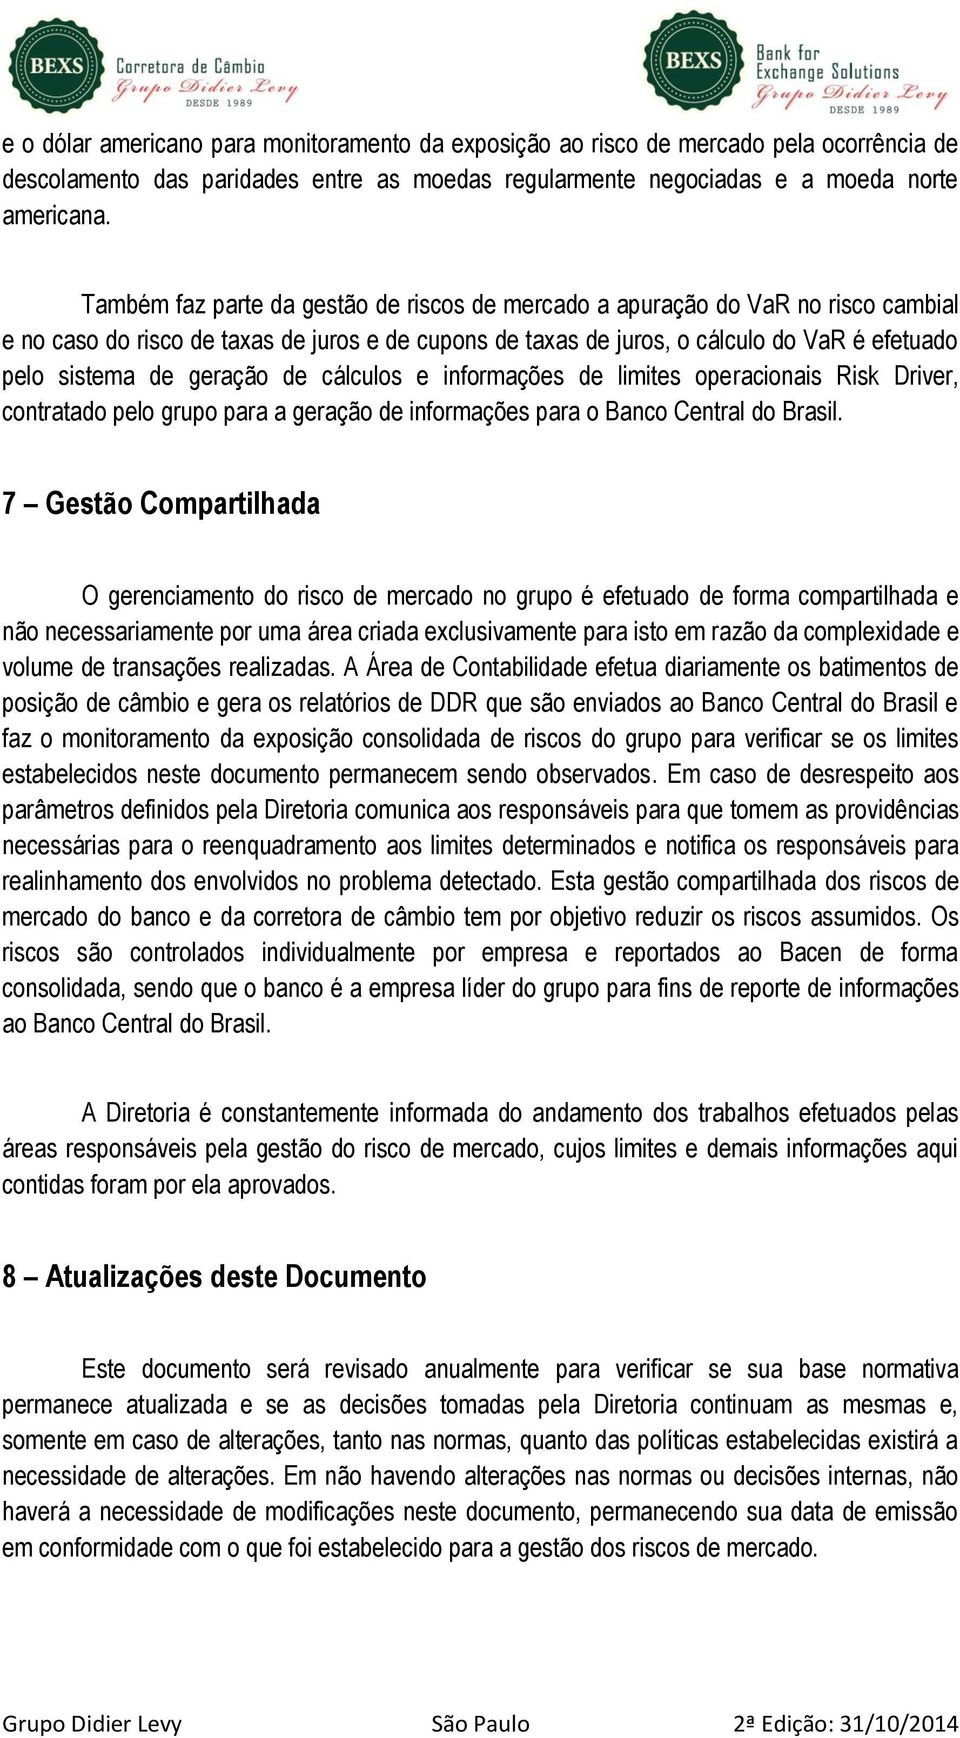 geração de cálculos e informações de limites operacionais Risk Driver, contratado pelo grupo para a geração de informações para o Banco Central do Brasil.